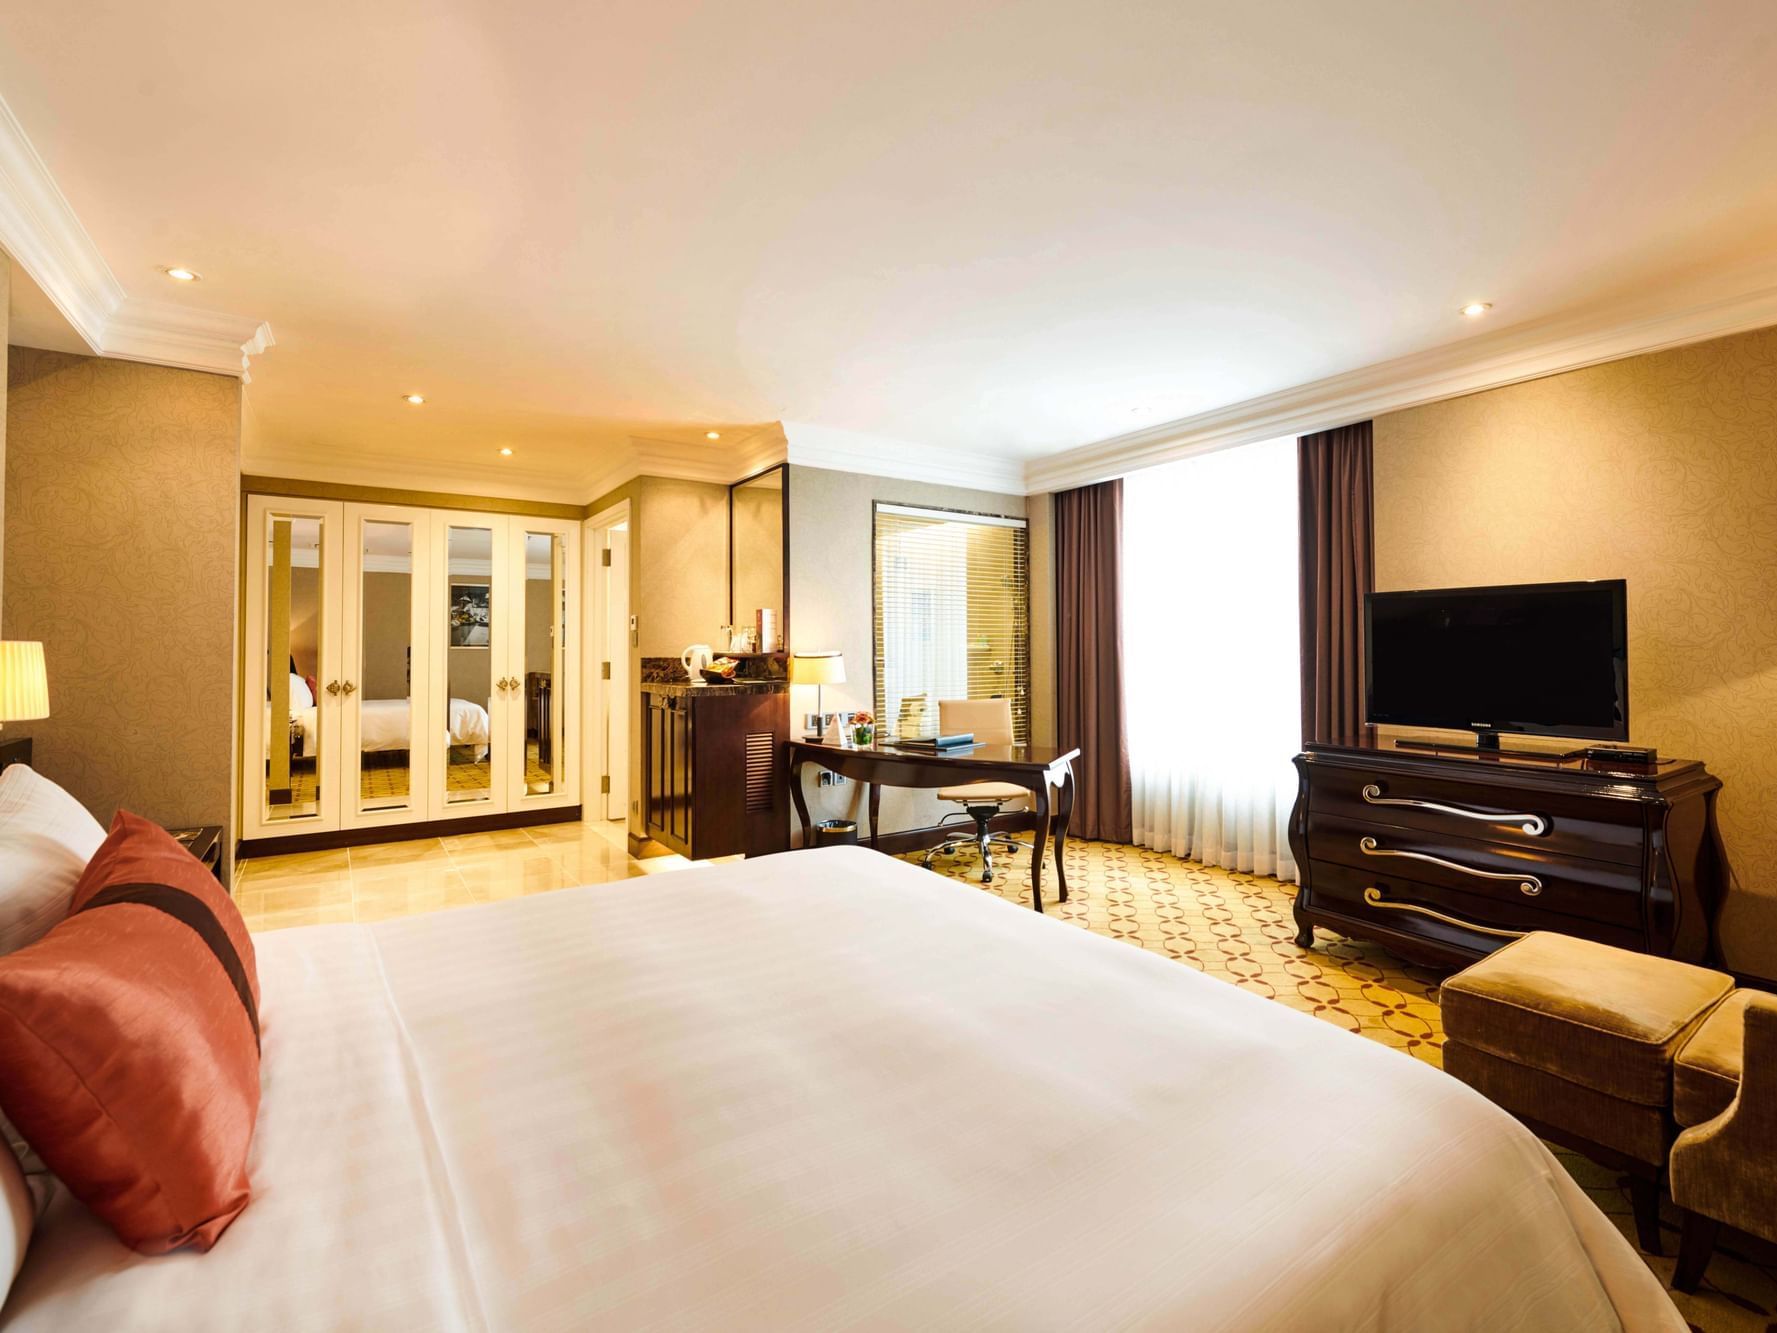 Deluxe Premium room interior design at Eastin Hotels